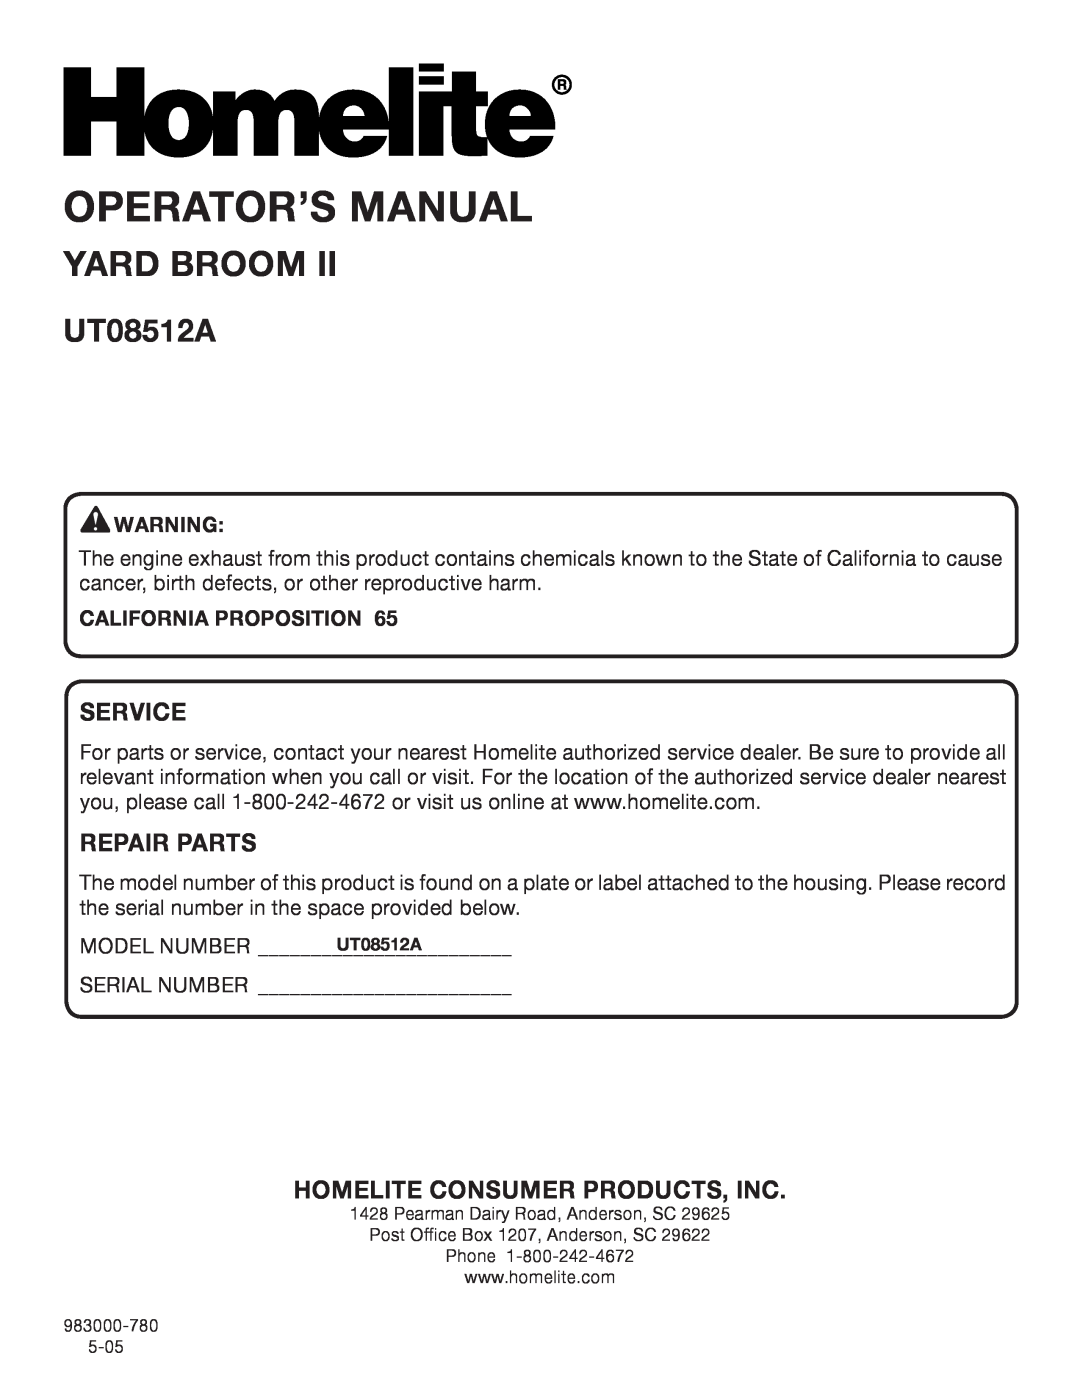 Homelite UT08512A manual Operator’S Manual, Yard Broom, Service, Repair Parts, Homelite Consumer Products, Inc 